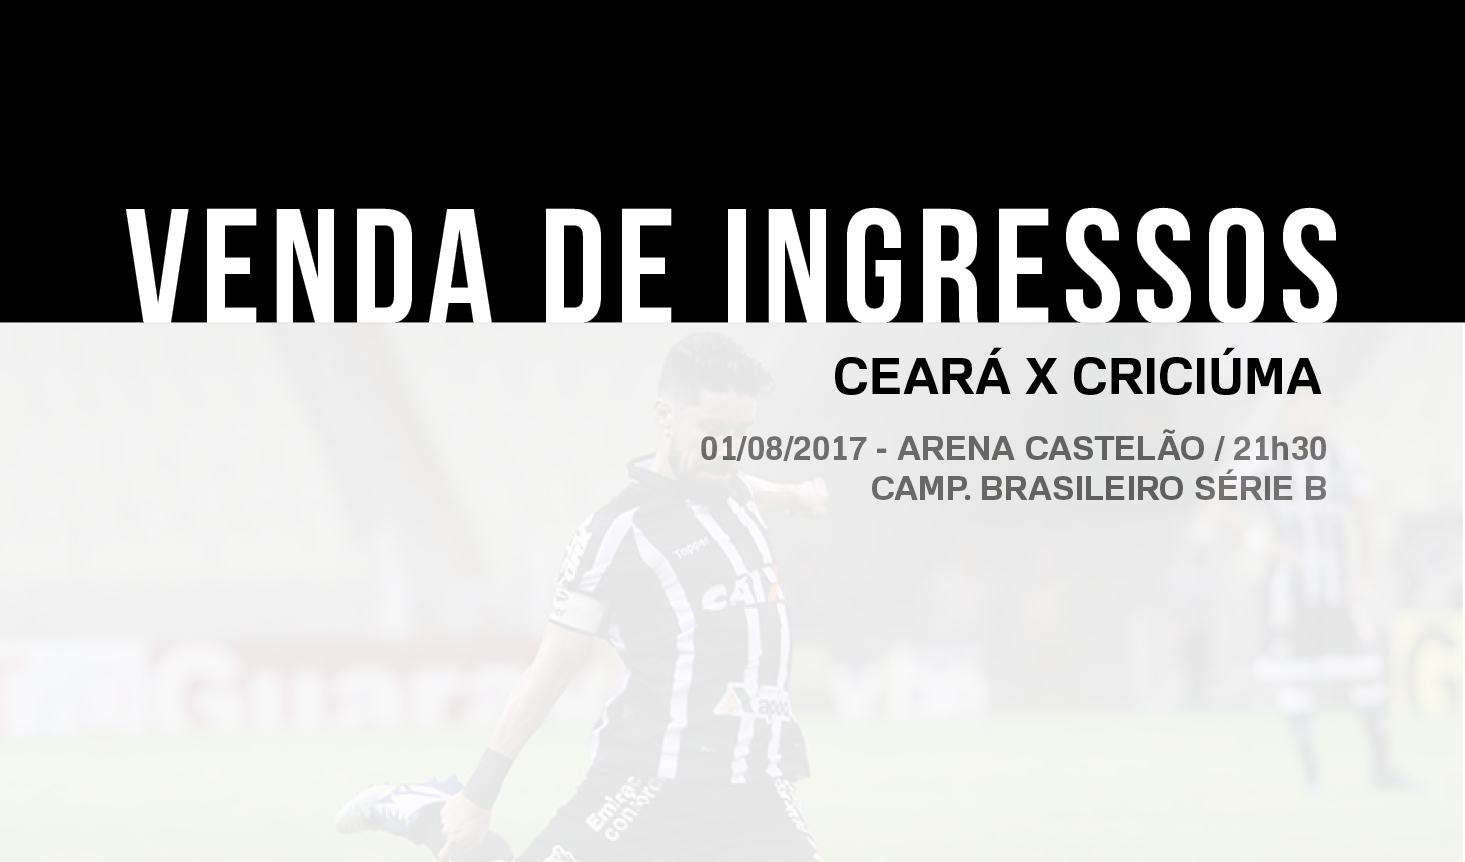 Ceará mantém ingressos promocionais para partida contra Criciúma